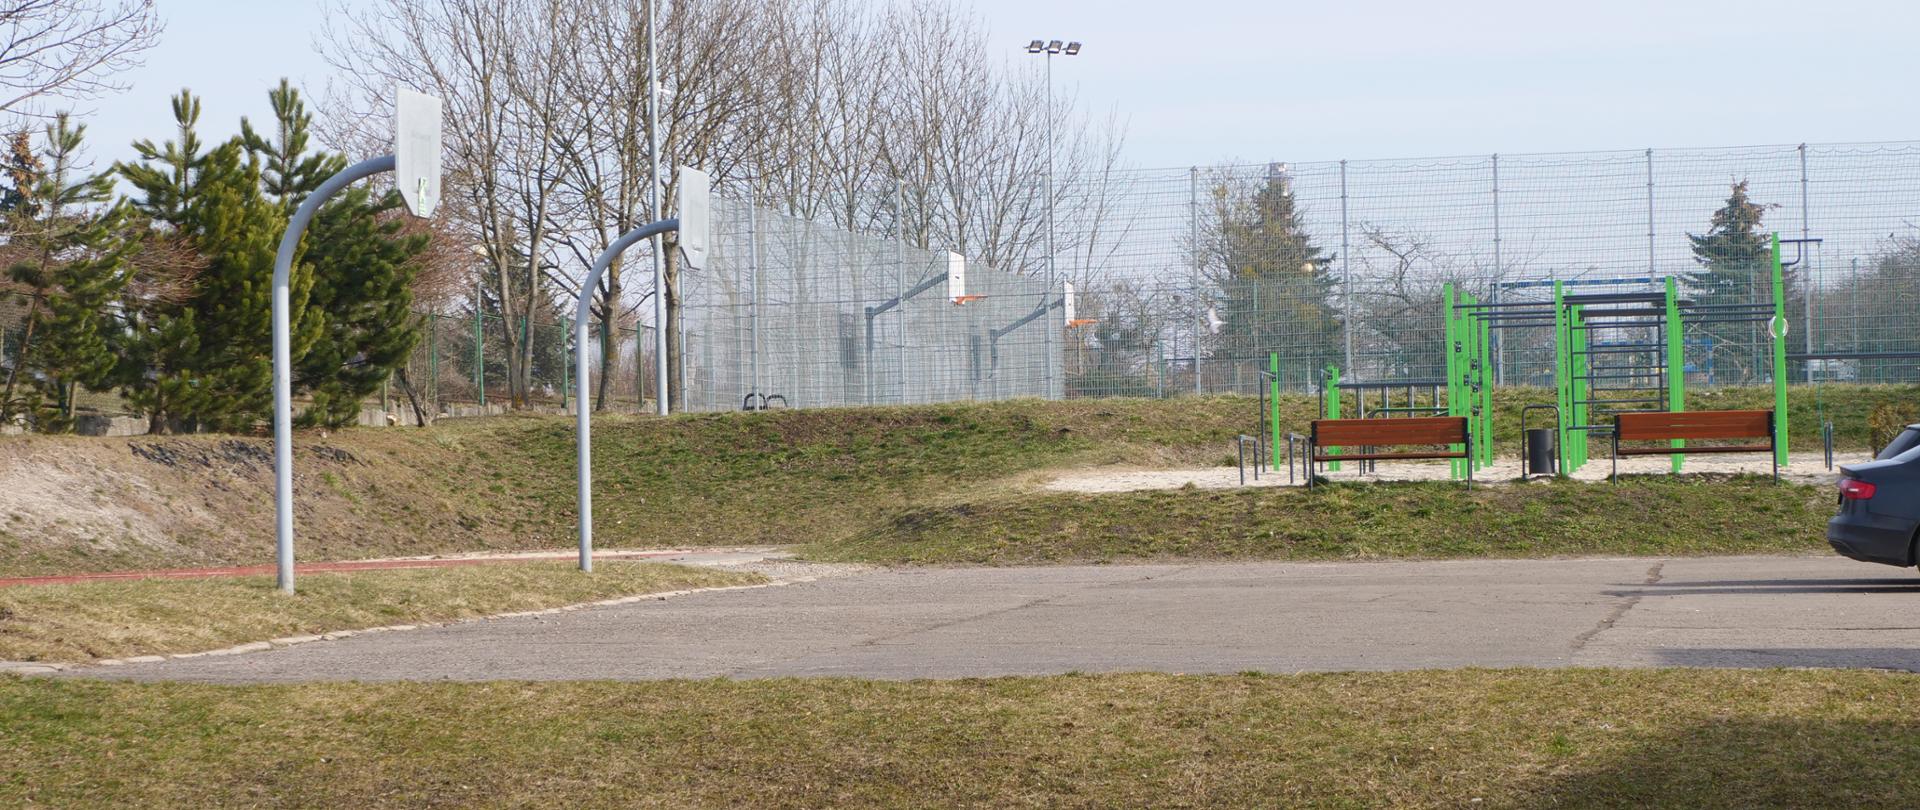 Zdjęcie przedstawia betonowe boisko, na którym stoją dwa kosze do koszykówki